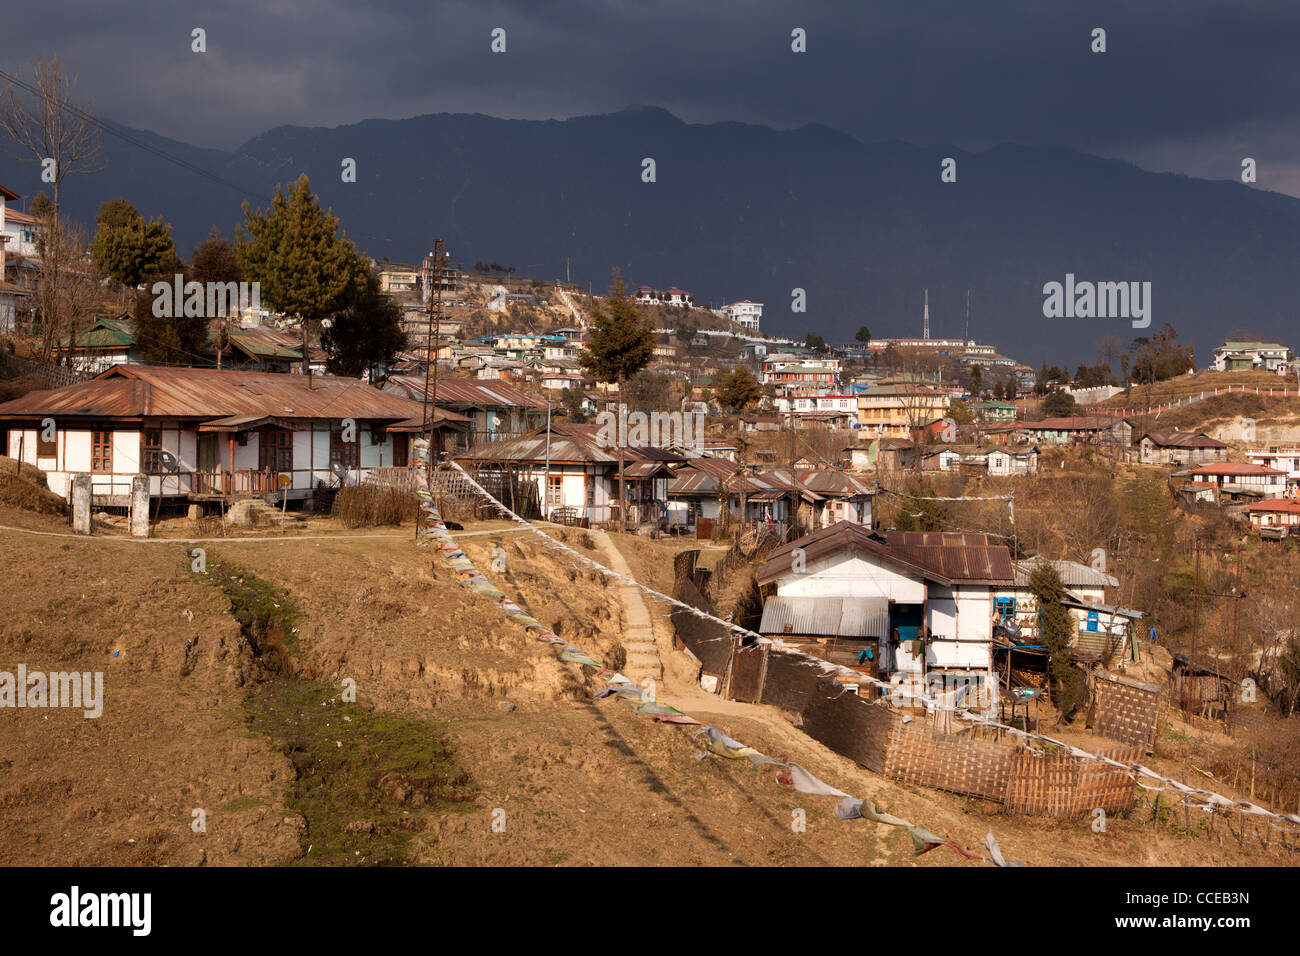 La India, Arunachal Pradesh, Tawang skyline, centro de la ciudad, las casas construidas sobre pendientes empinadas Foto de stock